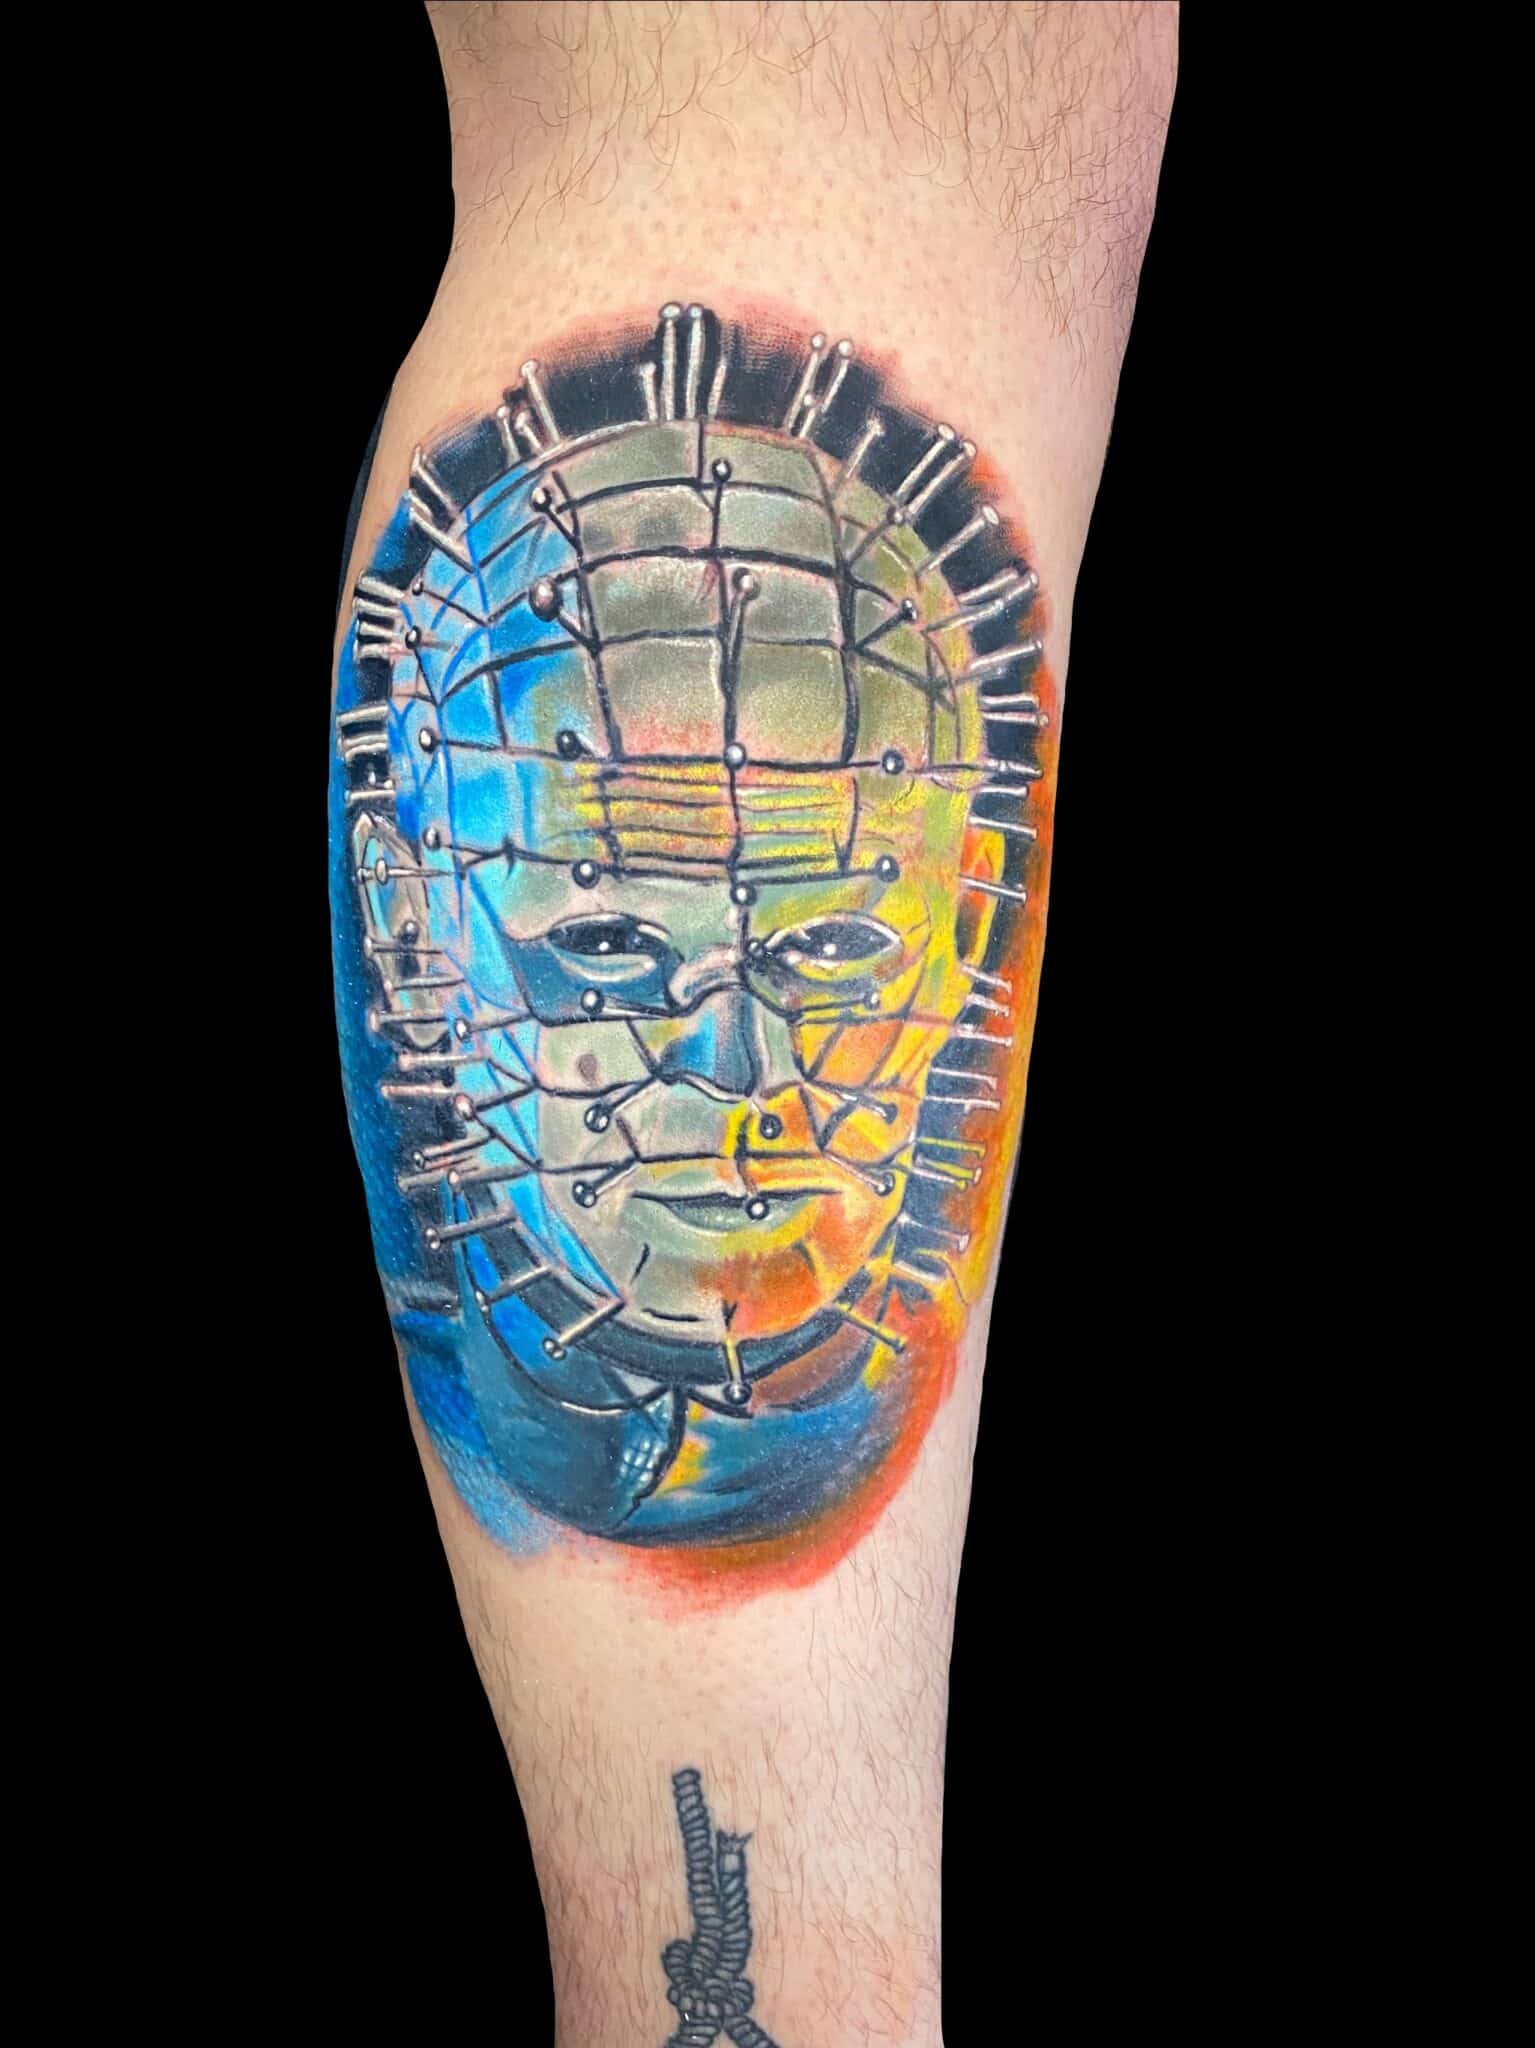 Tattoo by Chris Beck, artist at Revolt Tattoos